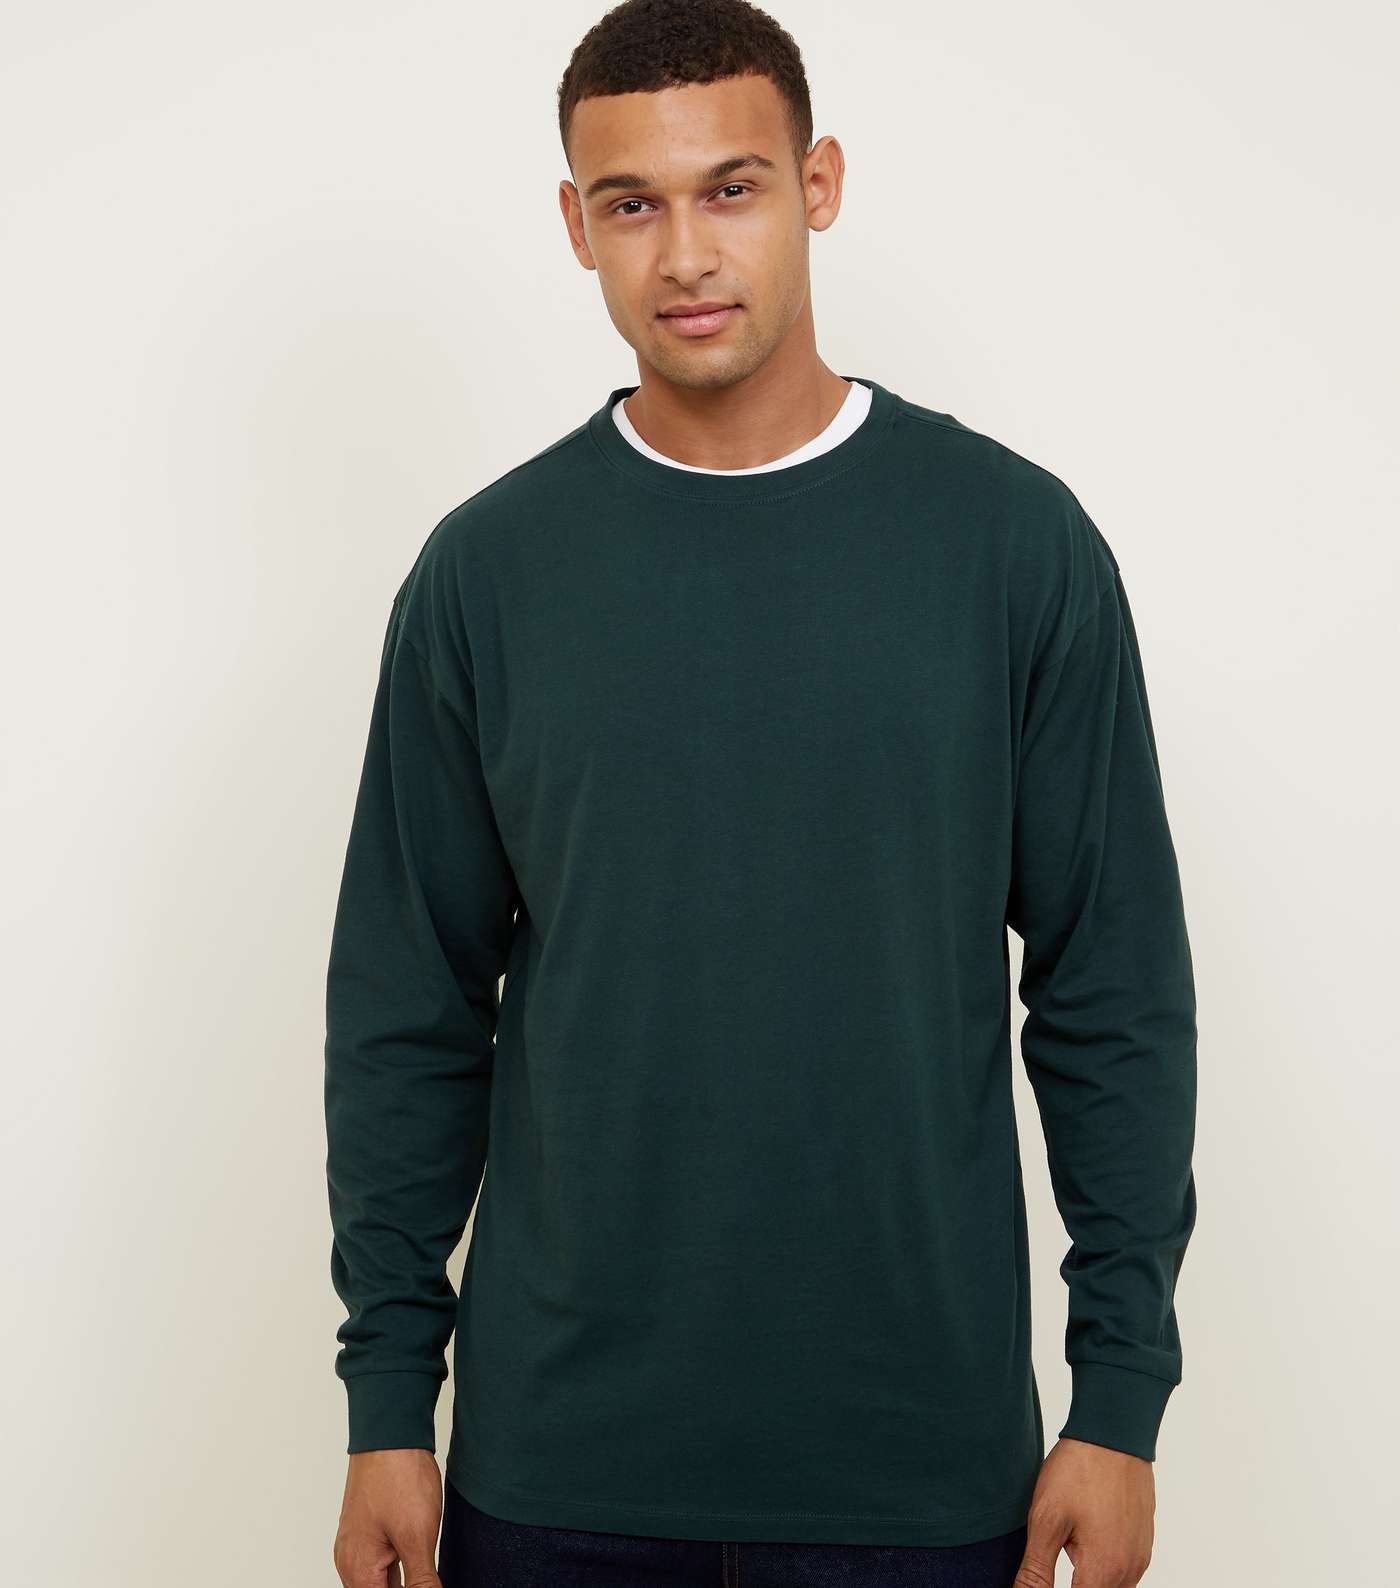 Green Cuffed Long Sleeve T-Shirt